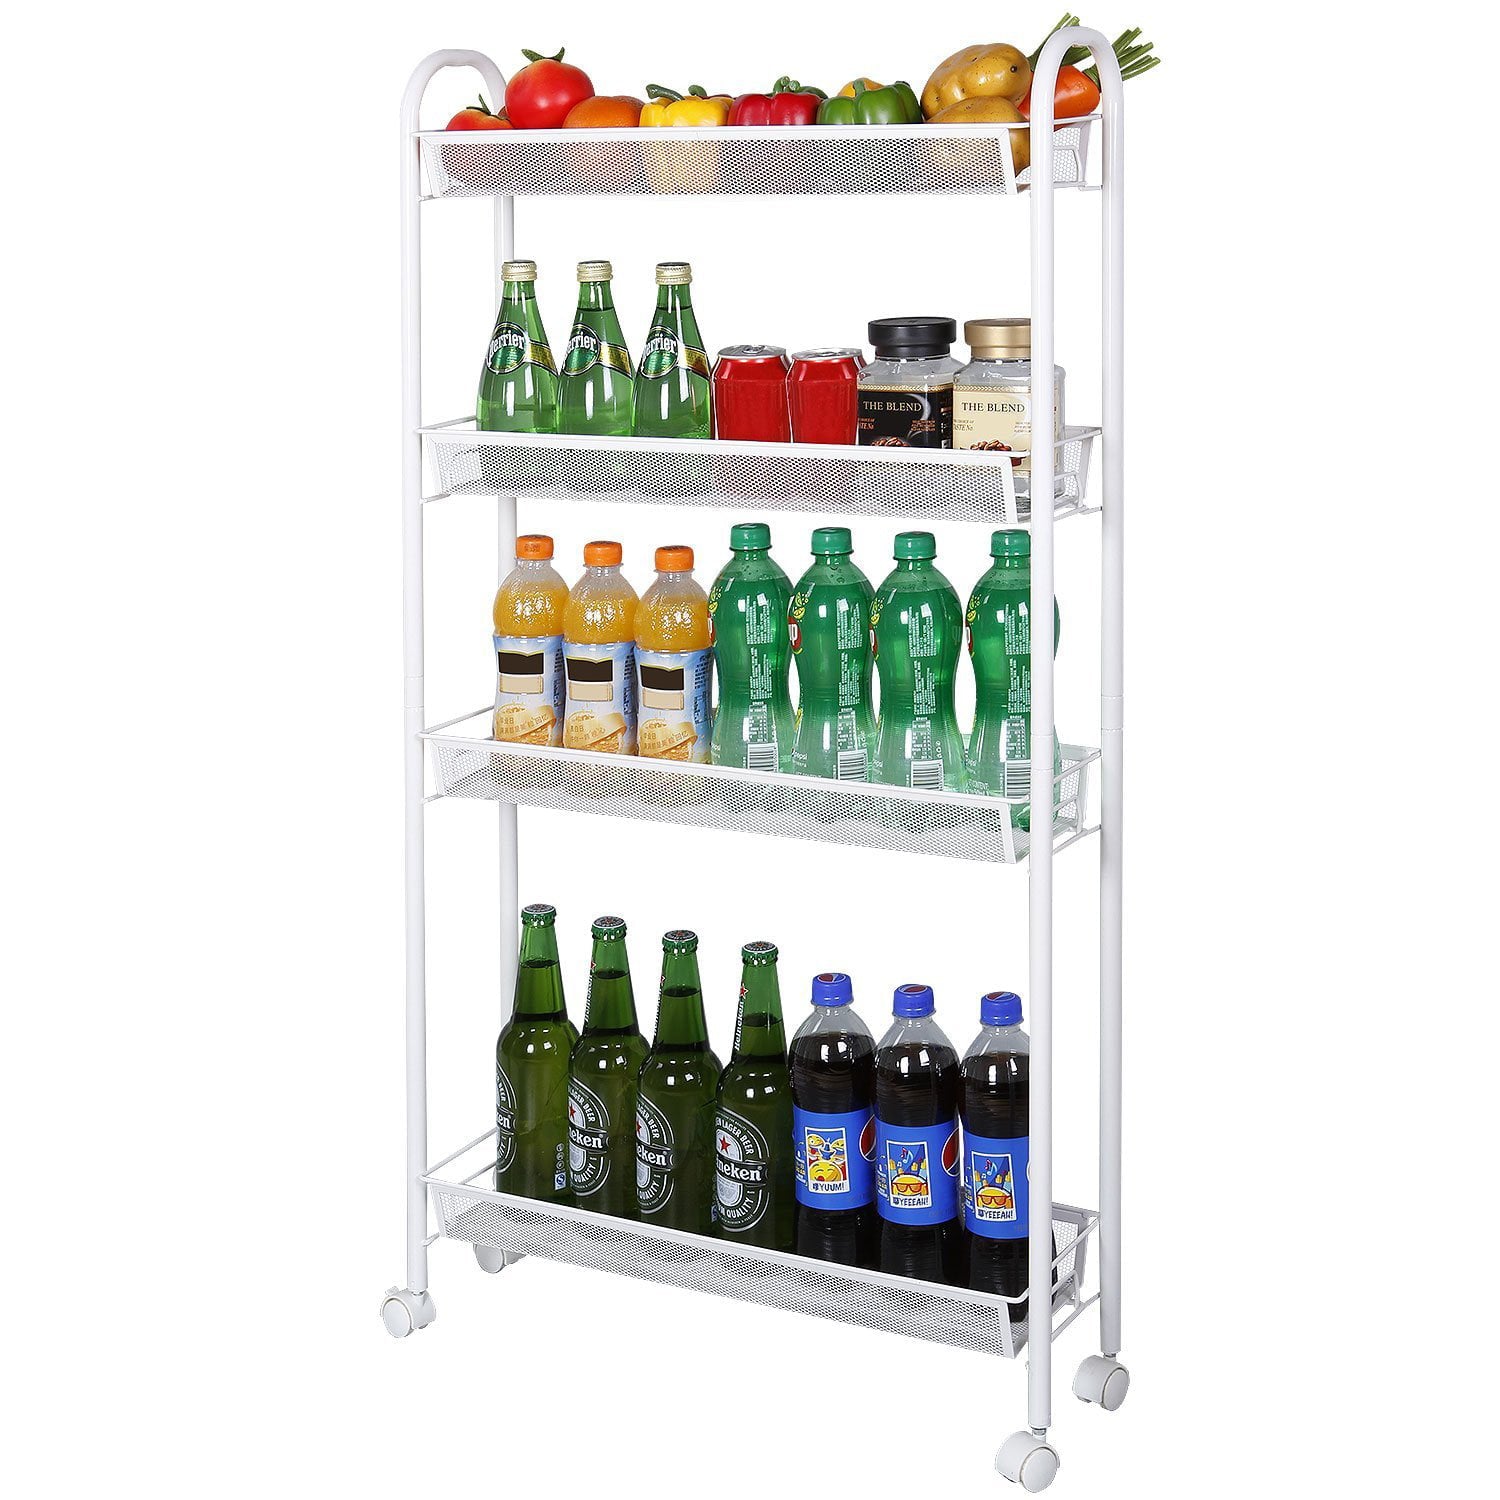 Zimtown 4-Tier Slim Rolling Cart， Kitchen Storage Organizer Mesh Wire Storage Carts with Lockable Wheels， White